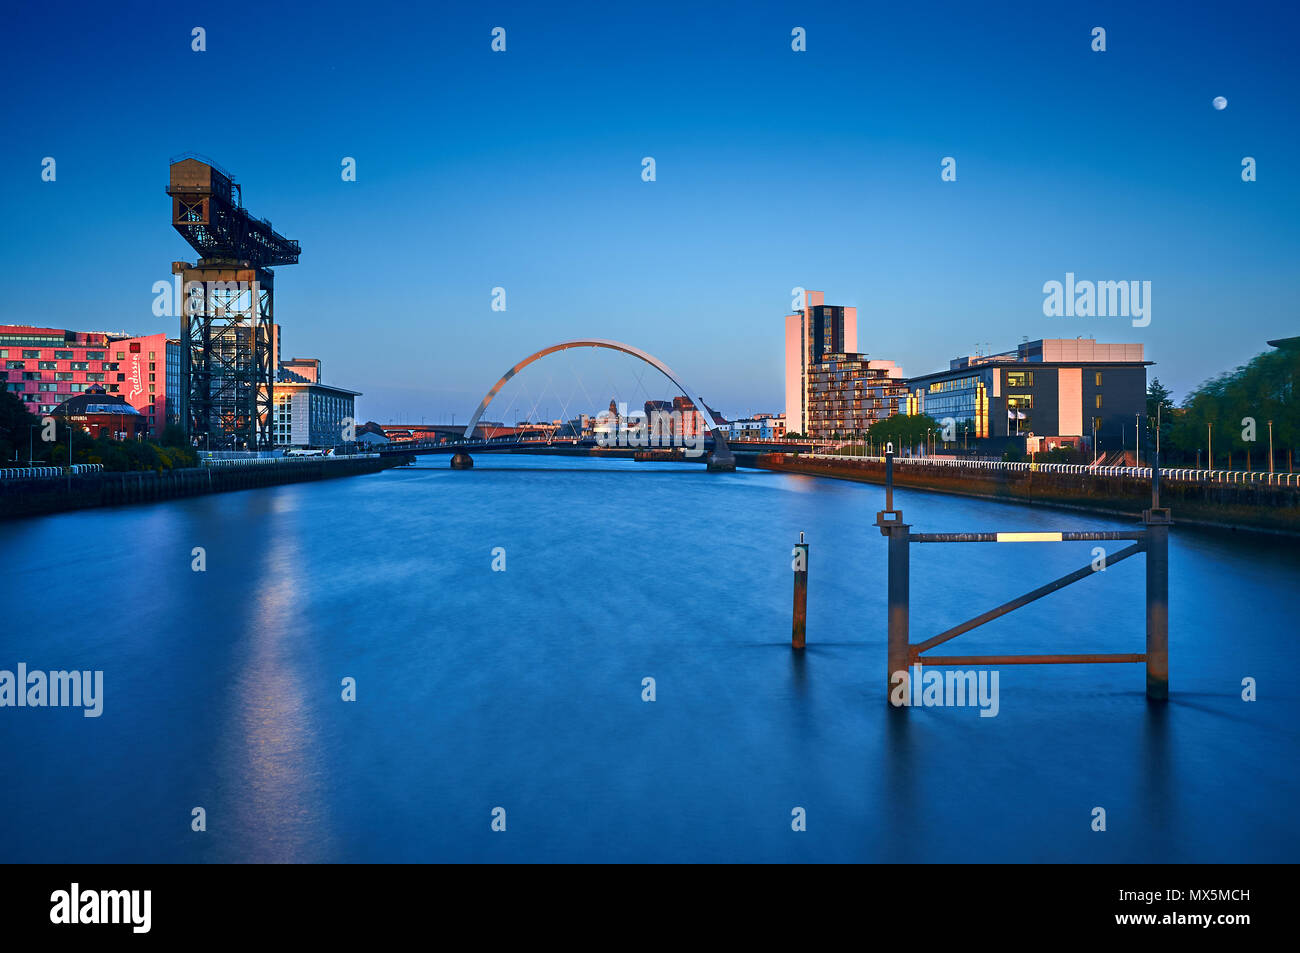 Une longue exposition image tirée du Bell's Bridge sur la rivière Clyde montrant les sites célèbres de Glasgow, le pont d'Arc et la Clyde Finnieston Crane Banque D'Images